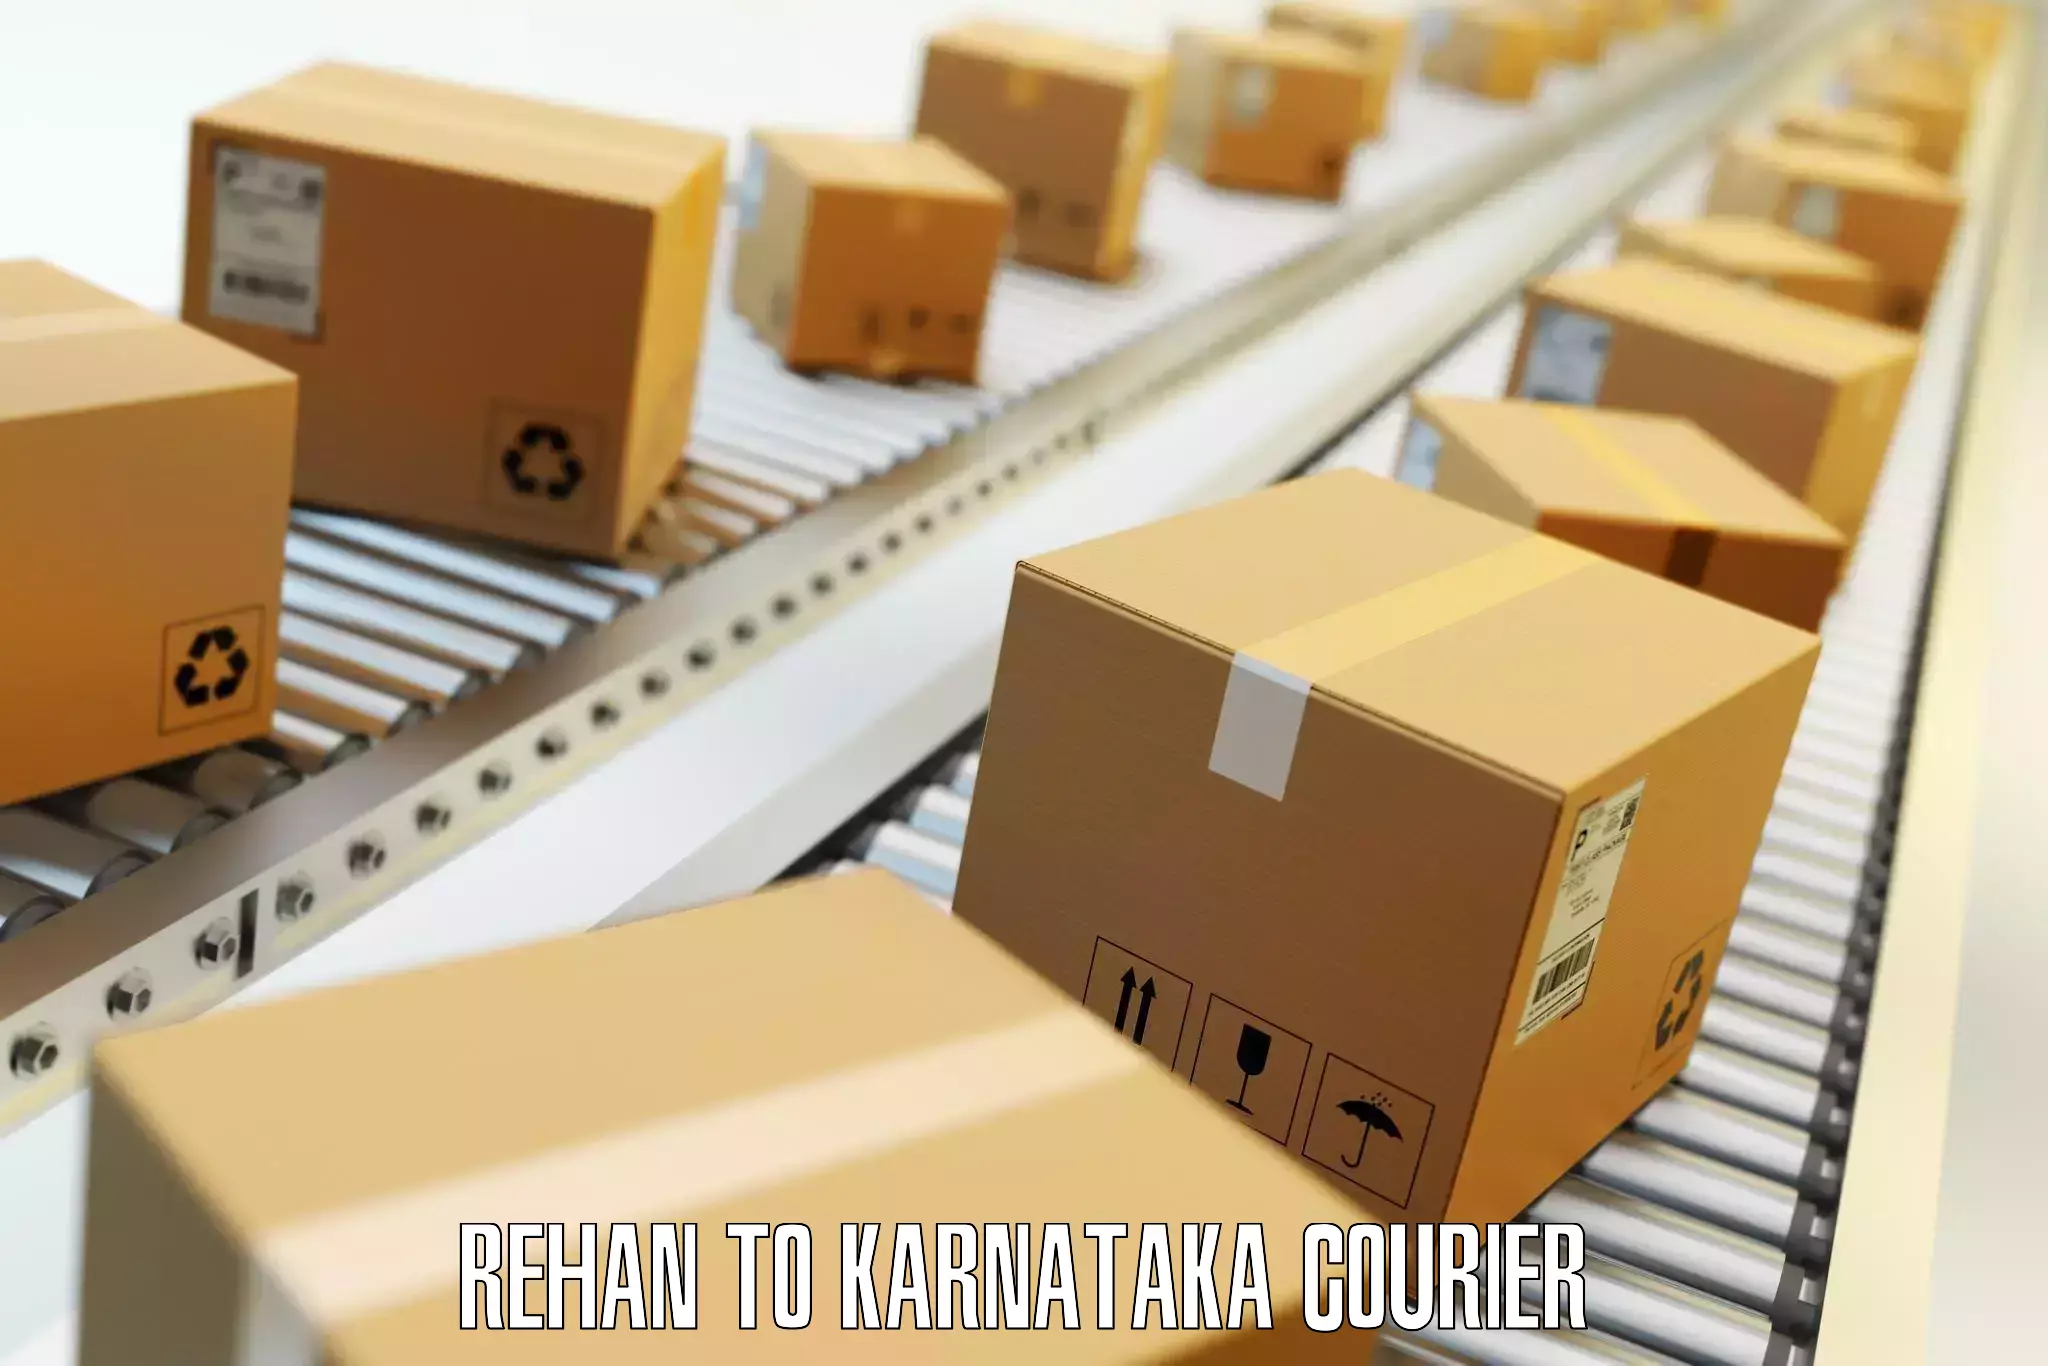 Luggage transport service Rehan to Karnataka